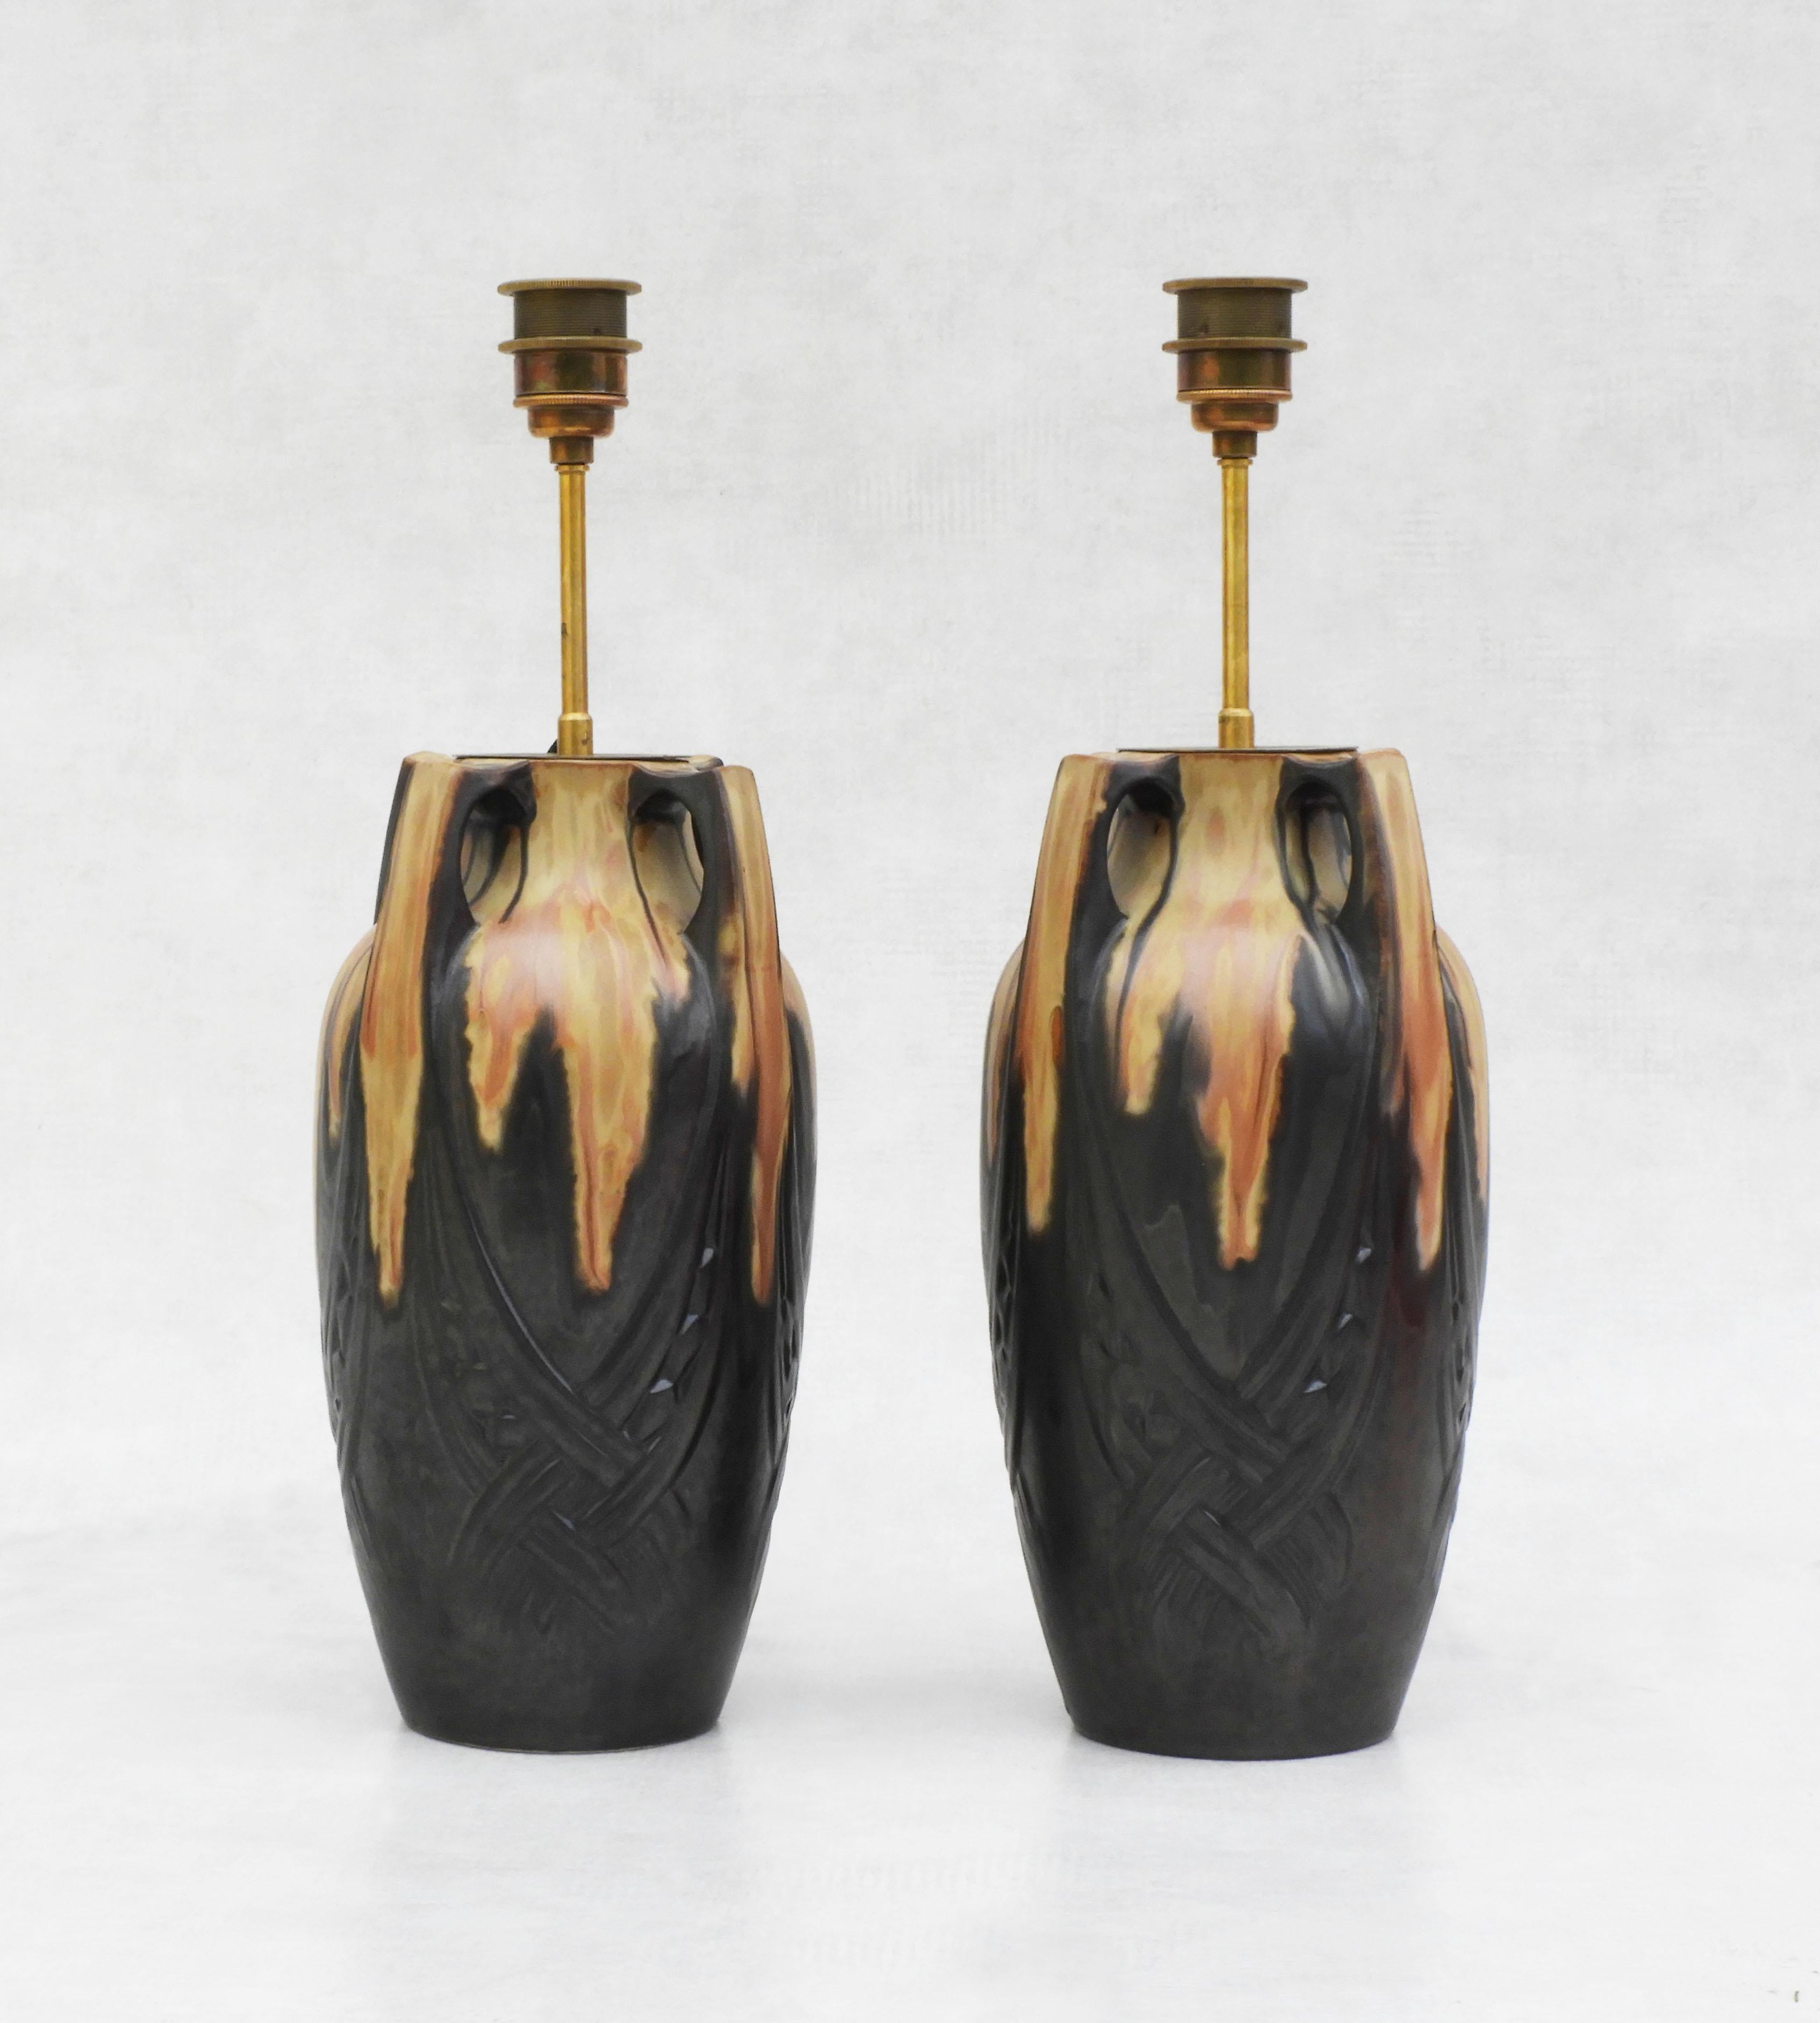 Jugendstillampen von Denbac Frankreich C1910

Ein Paar schöne Jugendstillampen aus Denbac, Frankreich um 1910. 
Geflammter Sandstein in Form einer Urne mit einem einzigartigen Tropfendekor, das jedes Stück auszeichnet. 
Diese Vasen wurden zu einem